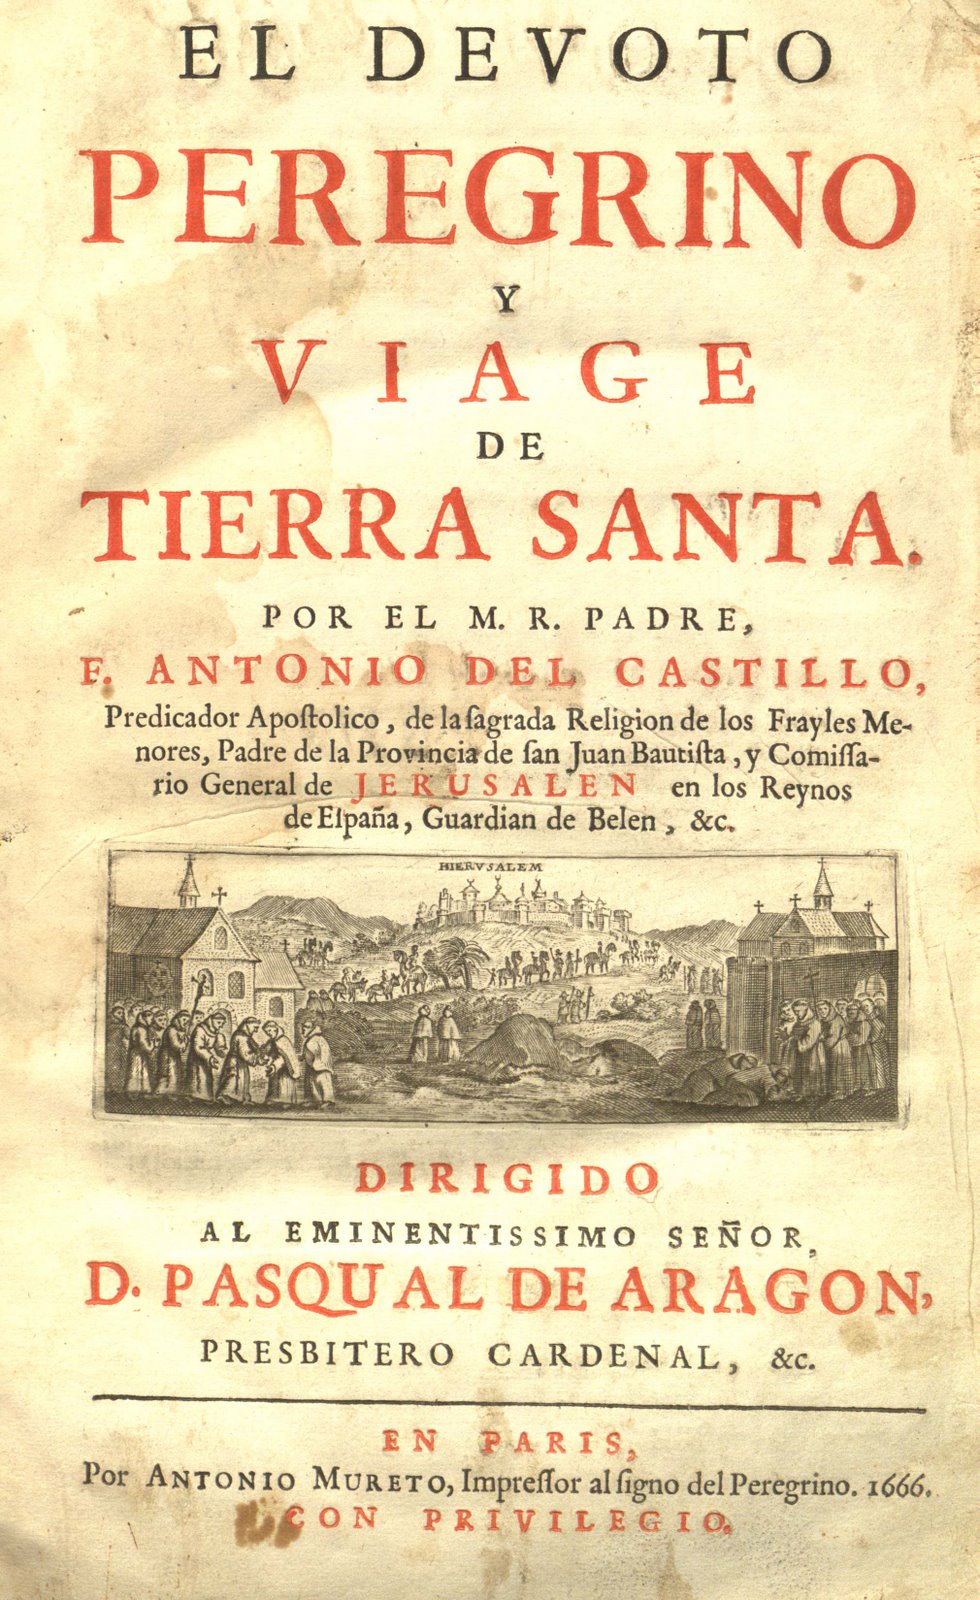 El Devoto Peregrino title page